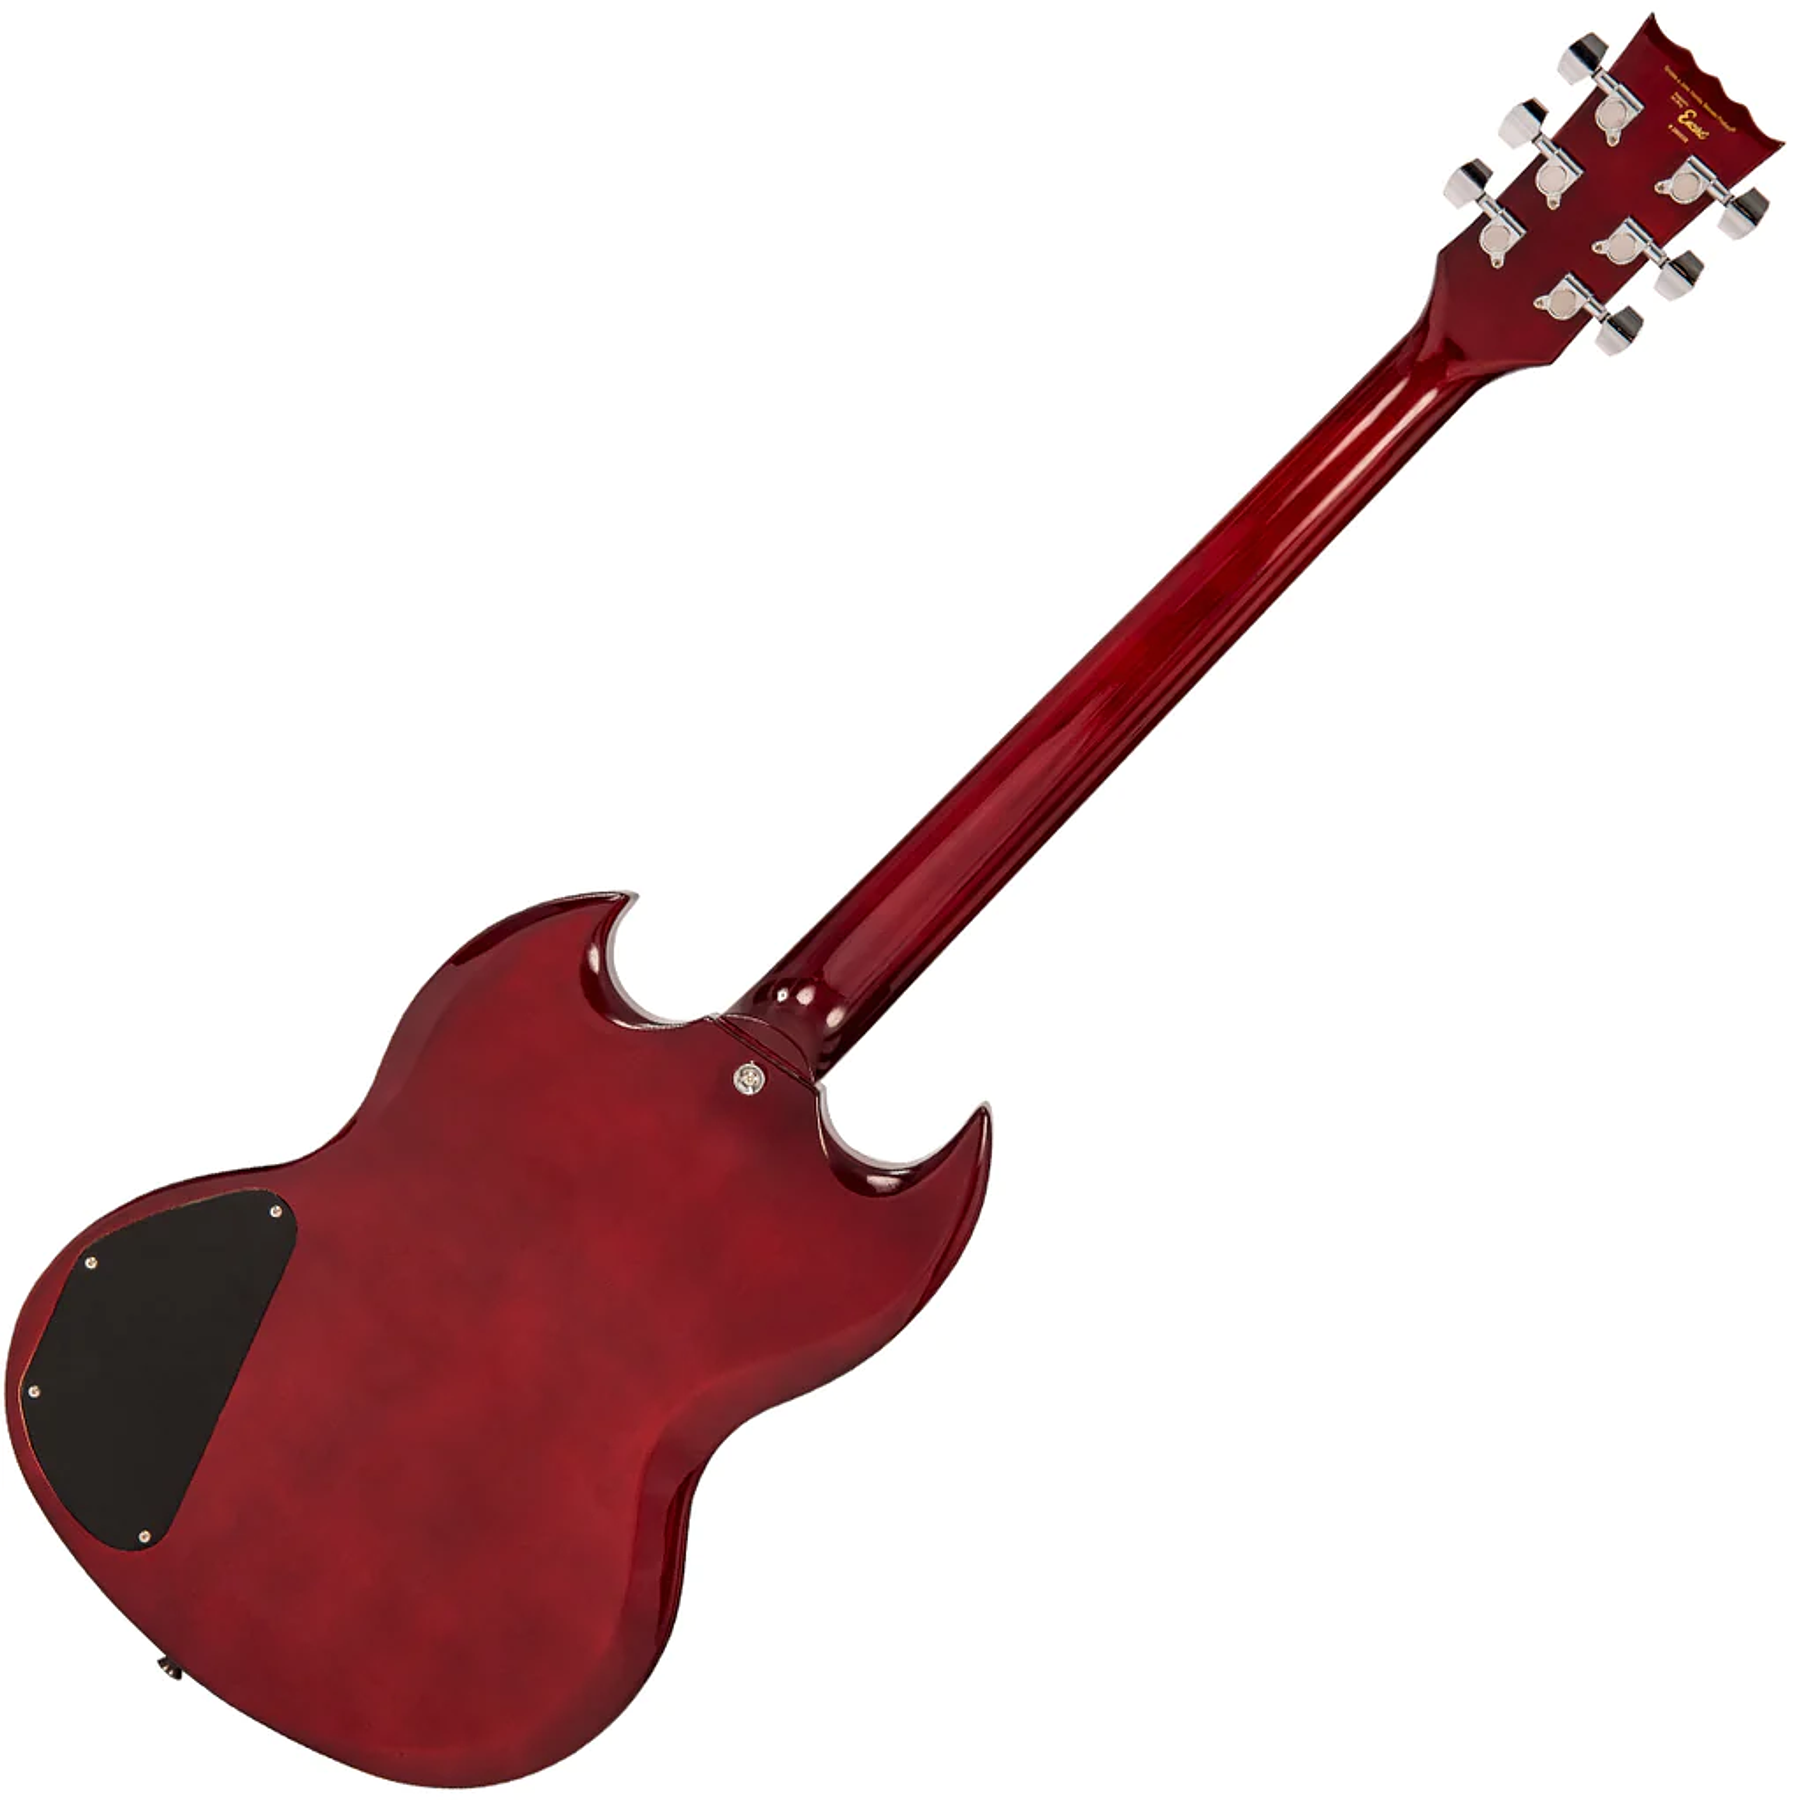 Guitarra Eléctrica ENCORE E69 Cuerpo Solido Tune-O-Matic Cherry Red